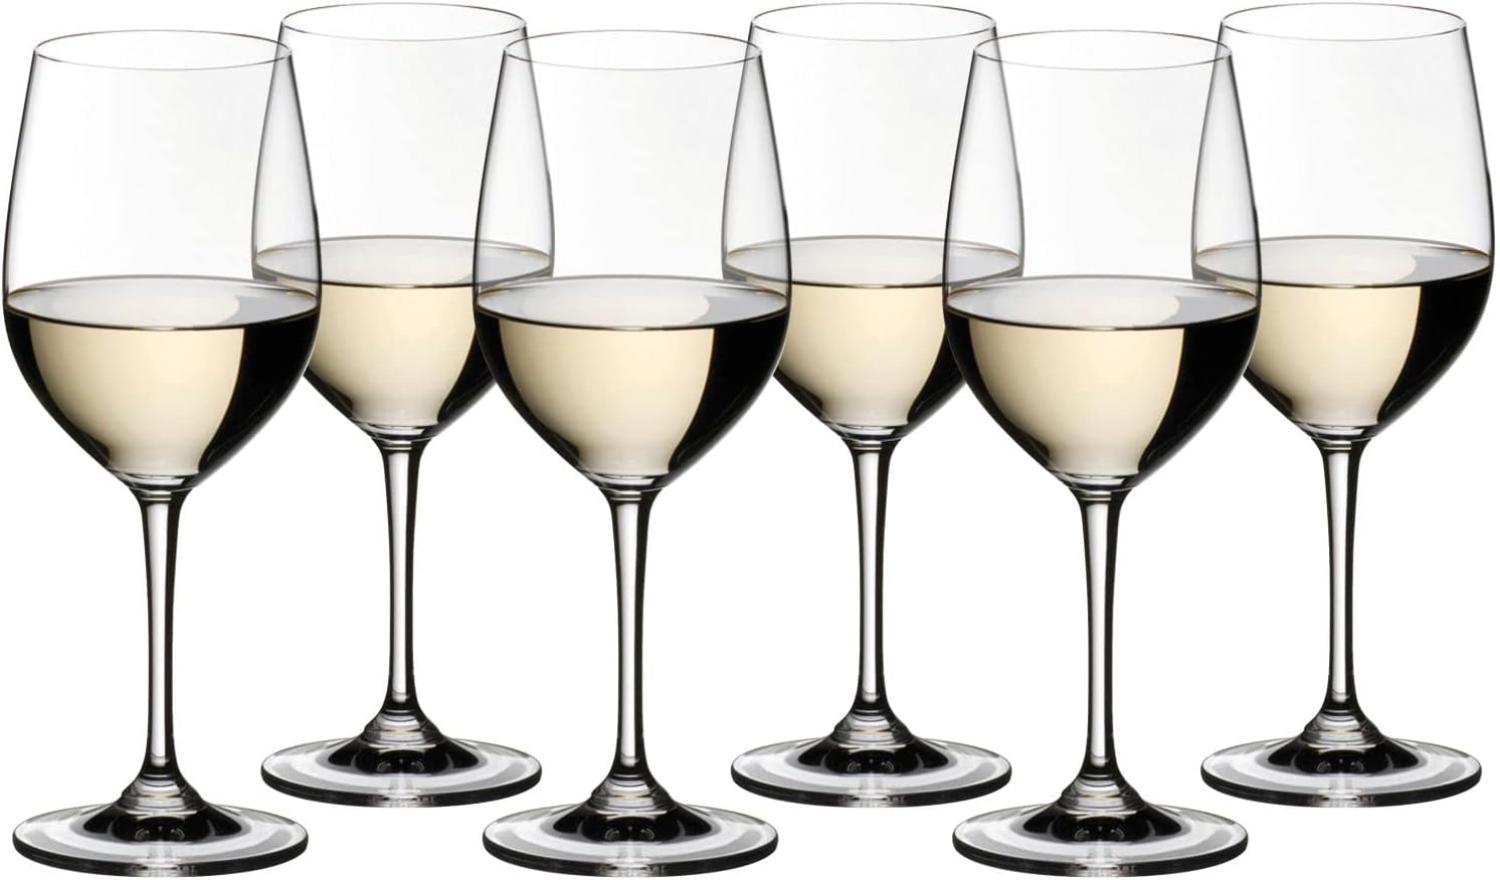 Riedel Vinum Kauf 8 Zahl 6, 8 x Viognier / Chardonnay, Weißweinglas, hochwertiges Glas, 350 ml, 7416/05 Bild 1